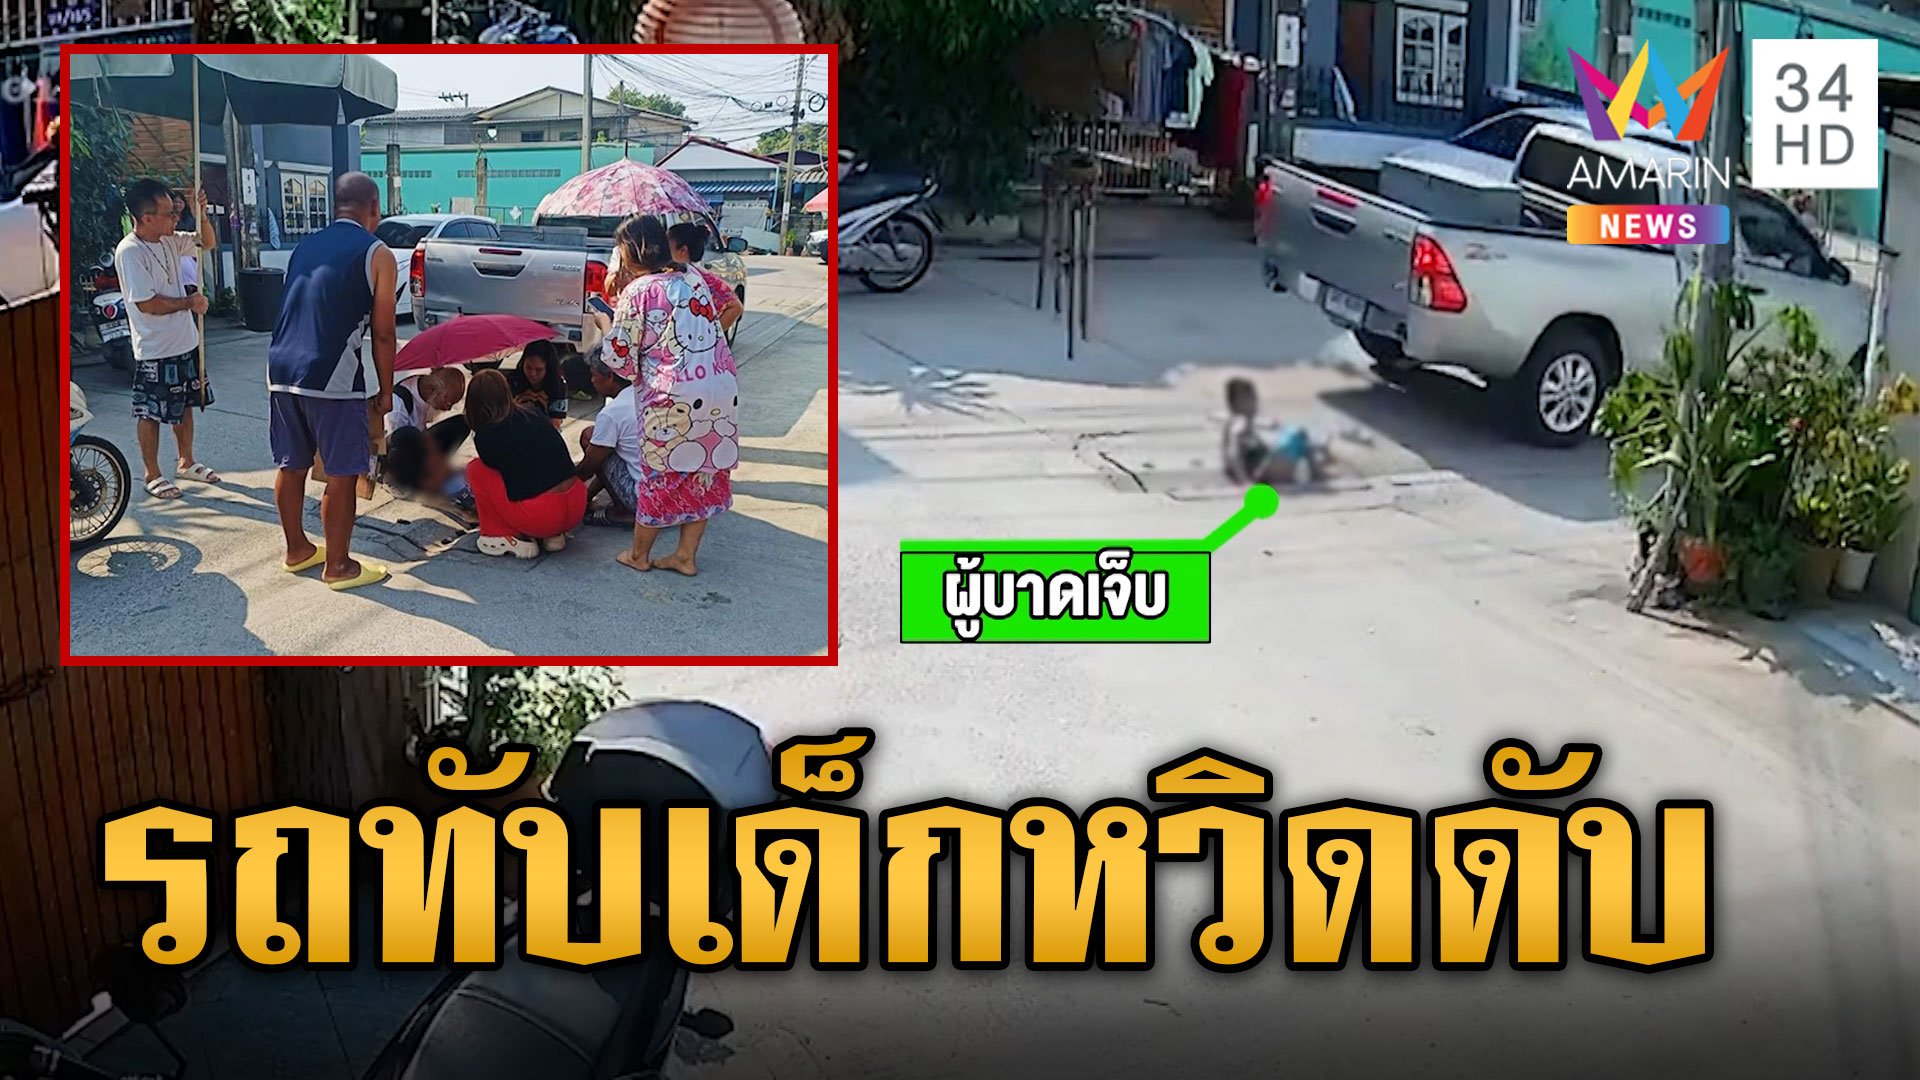 แค่เสี้ยวนาที กระบะทับเด็กปั่นจักรยาน ปอดตับฉีก-ขาหัก หวิดดับ | ข่าวเที่ยงอมรินทร์ | 8 เม.ย. 67 | AMARIN TVHD34